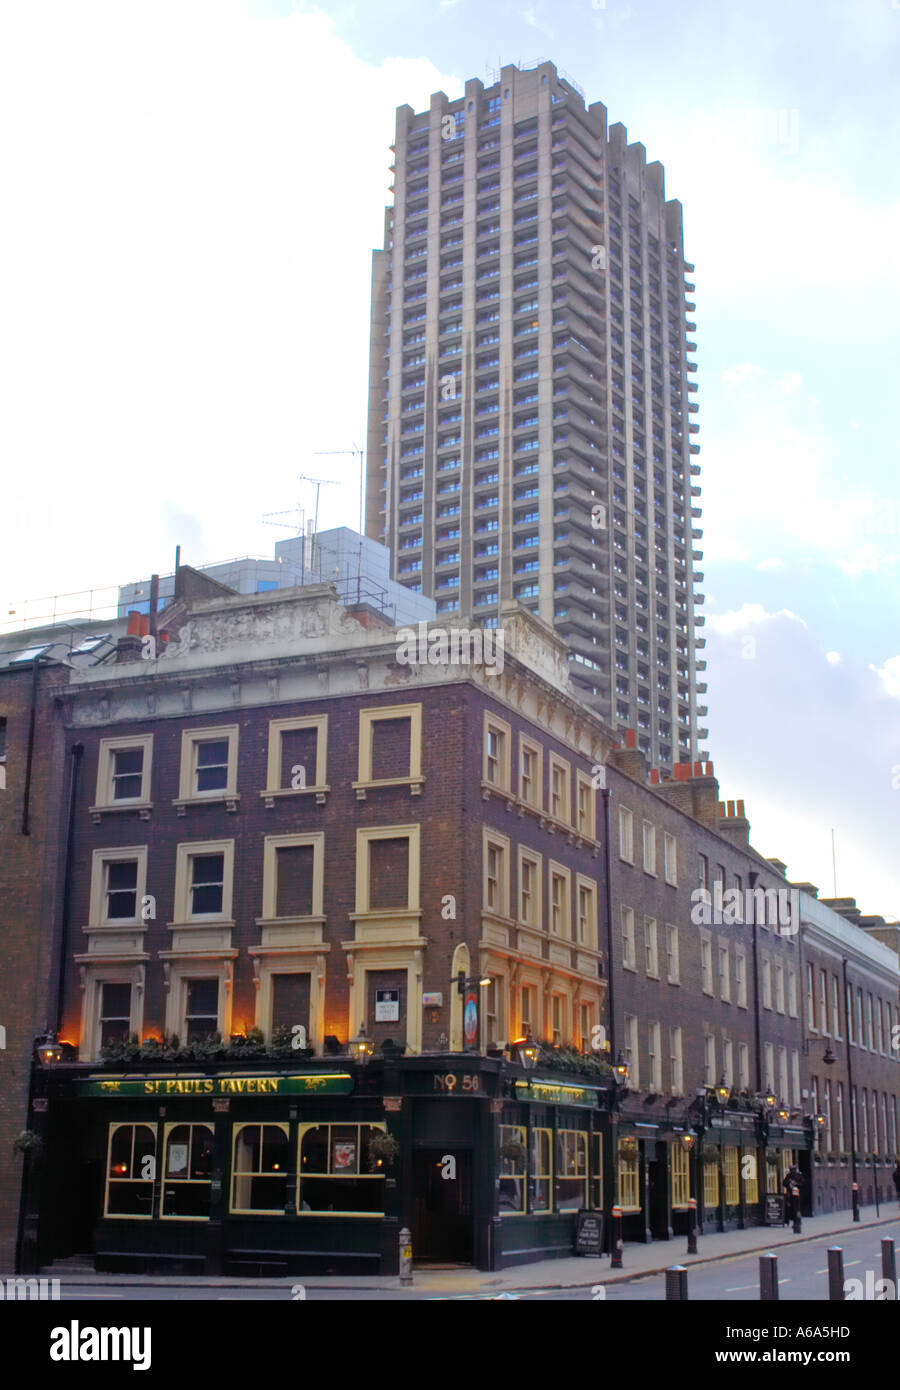 Barbican tower au dessus de St Paul's Tavern Pub dans City of London Banque D'Images